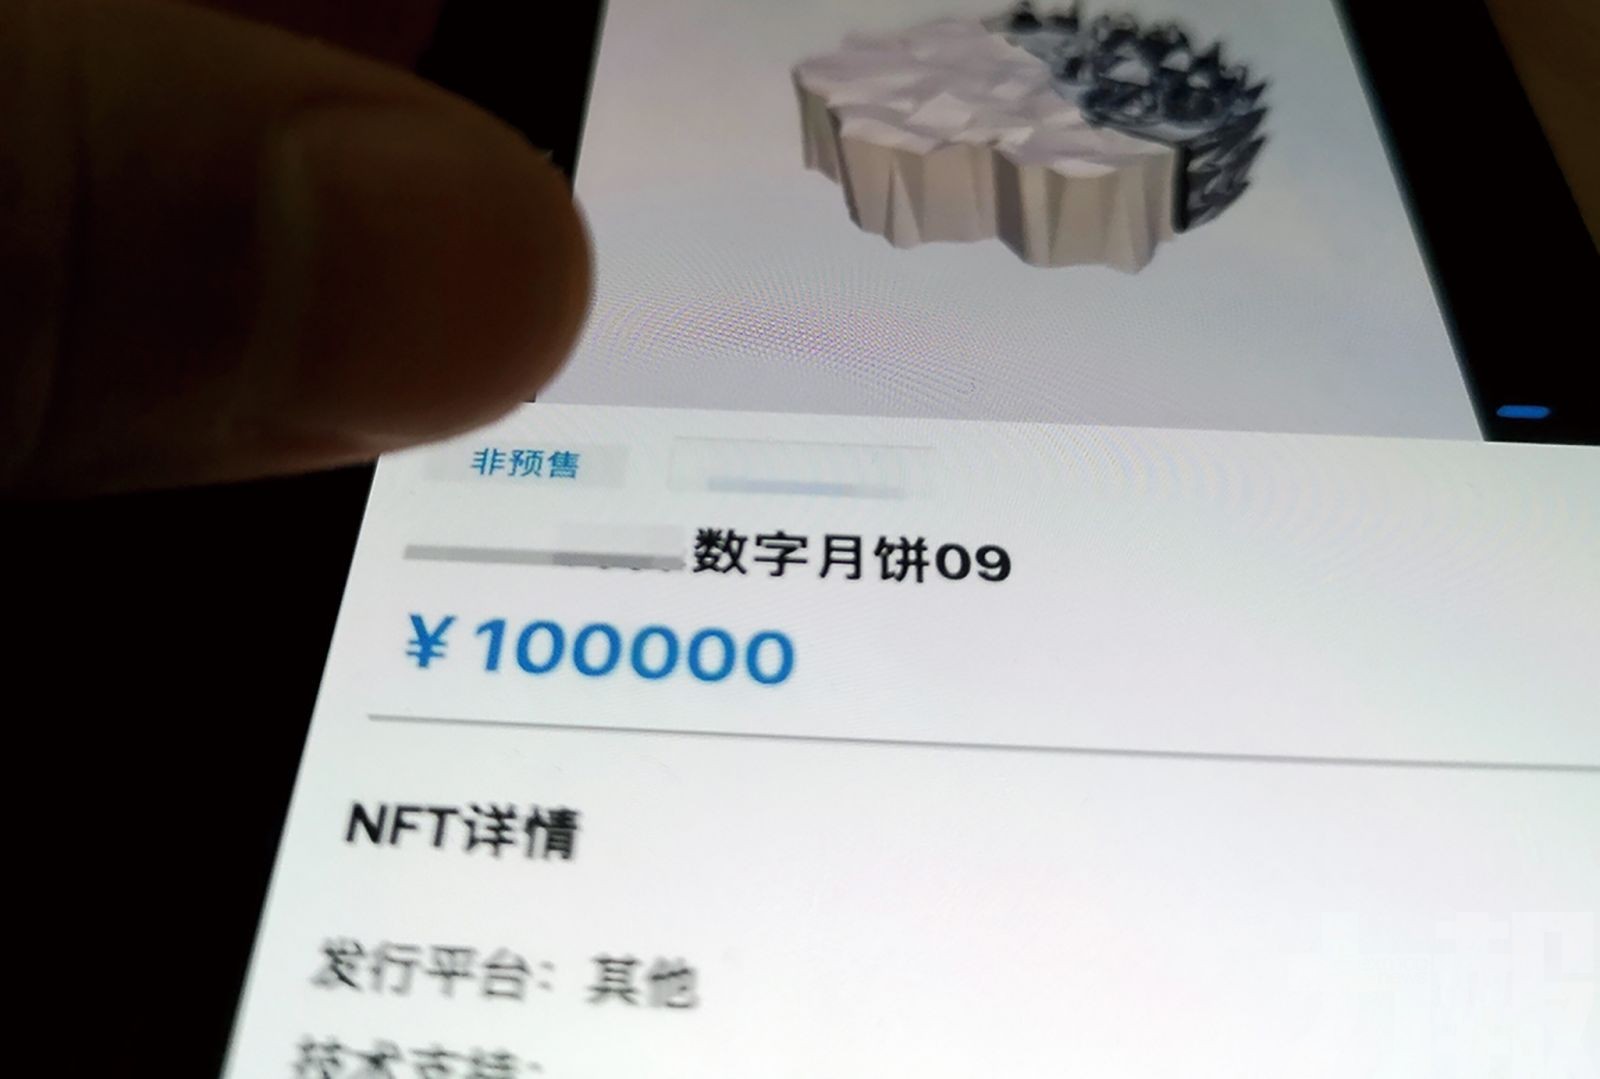 元宇宙「數字月餅」 賣到十萬元